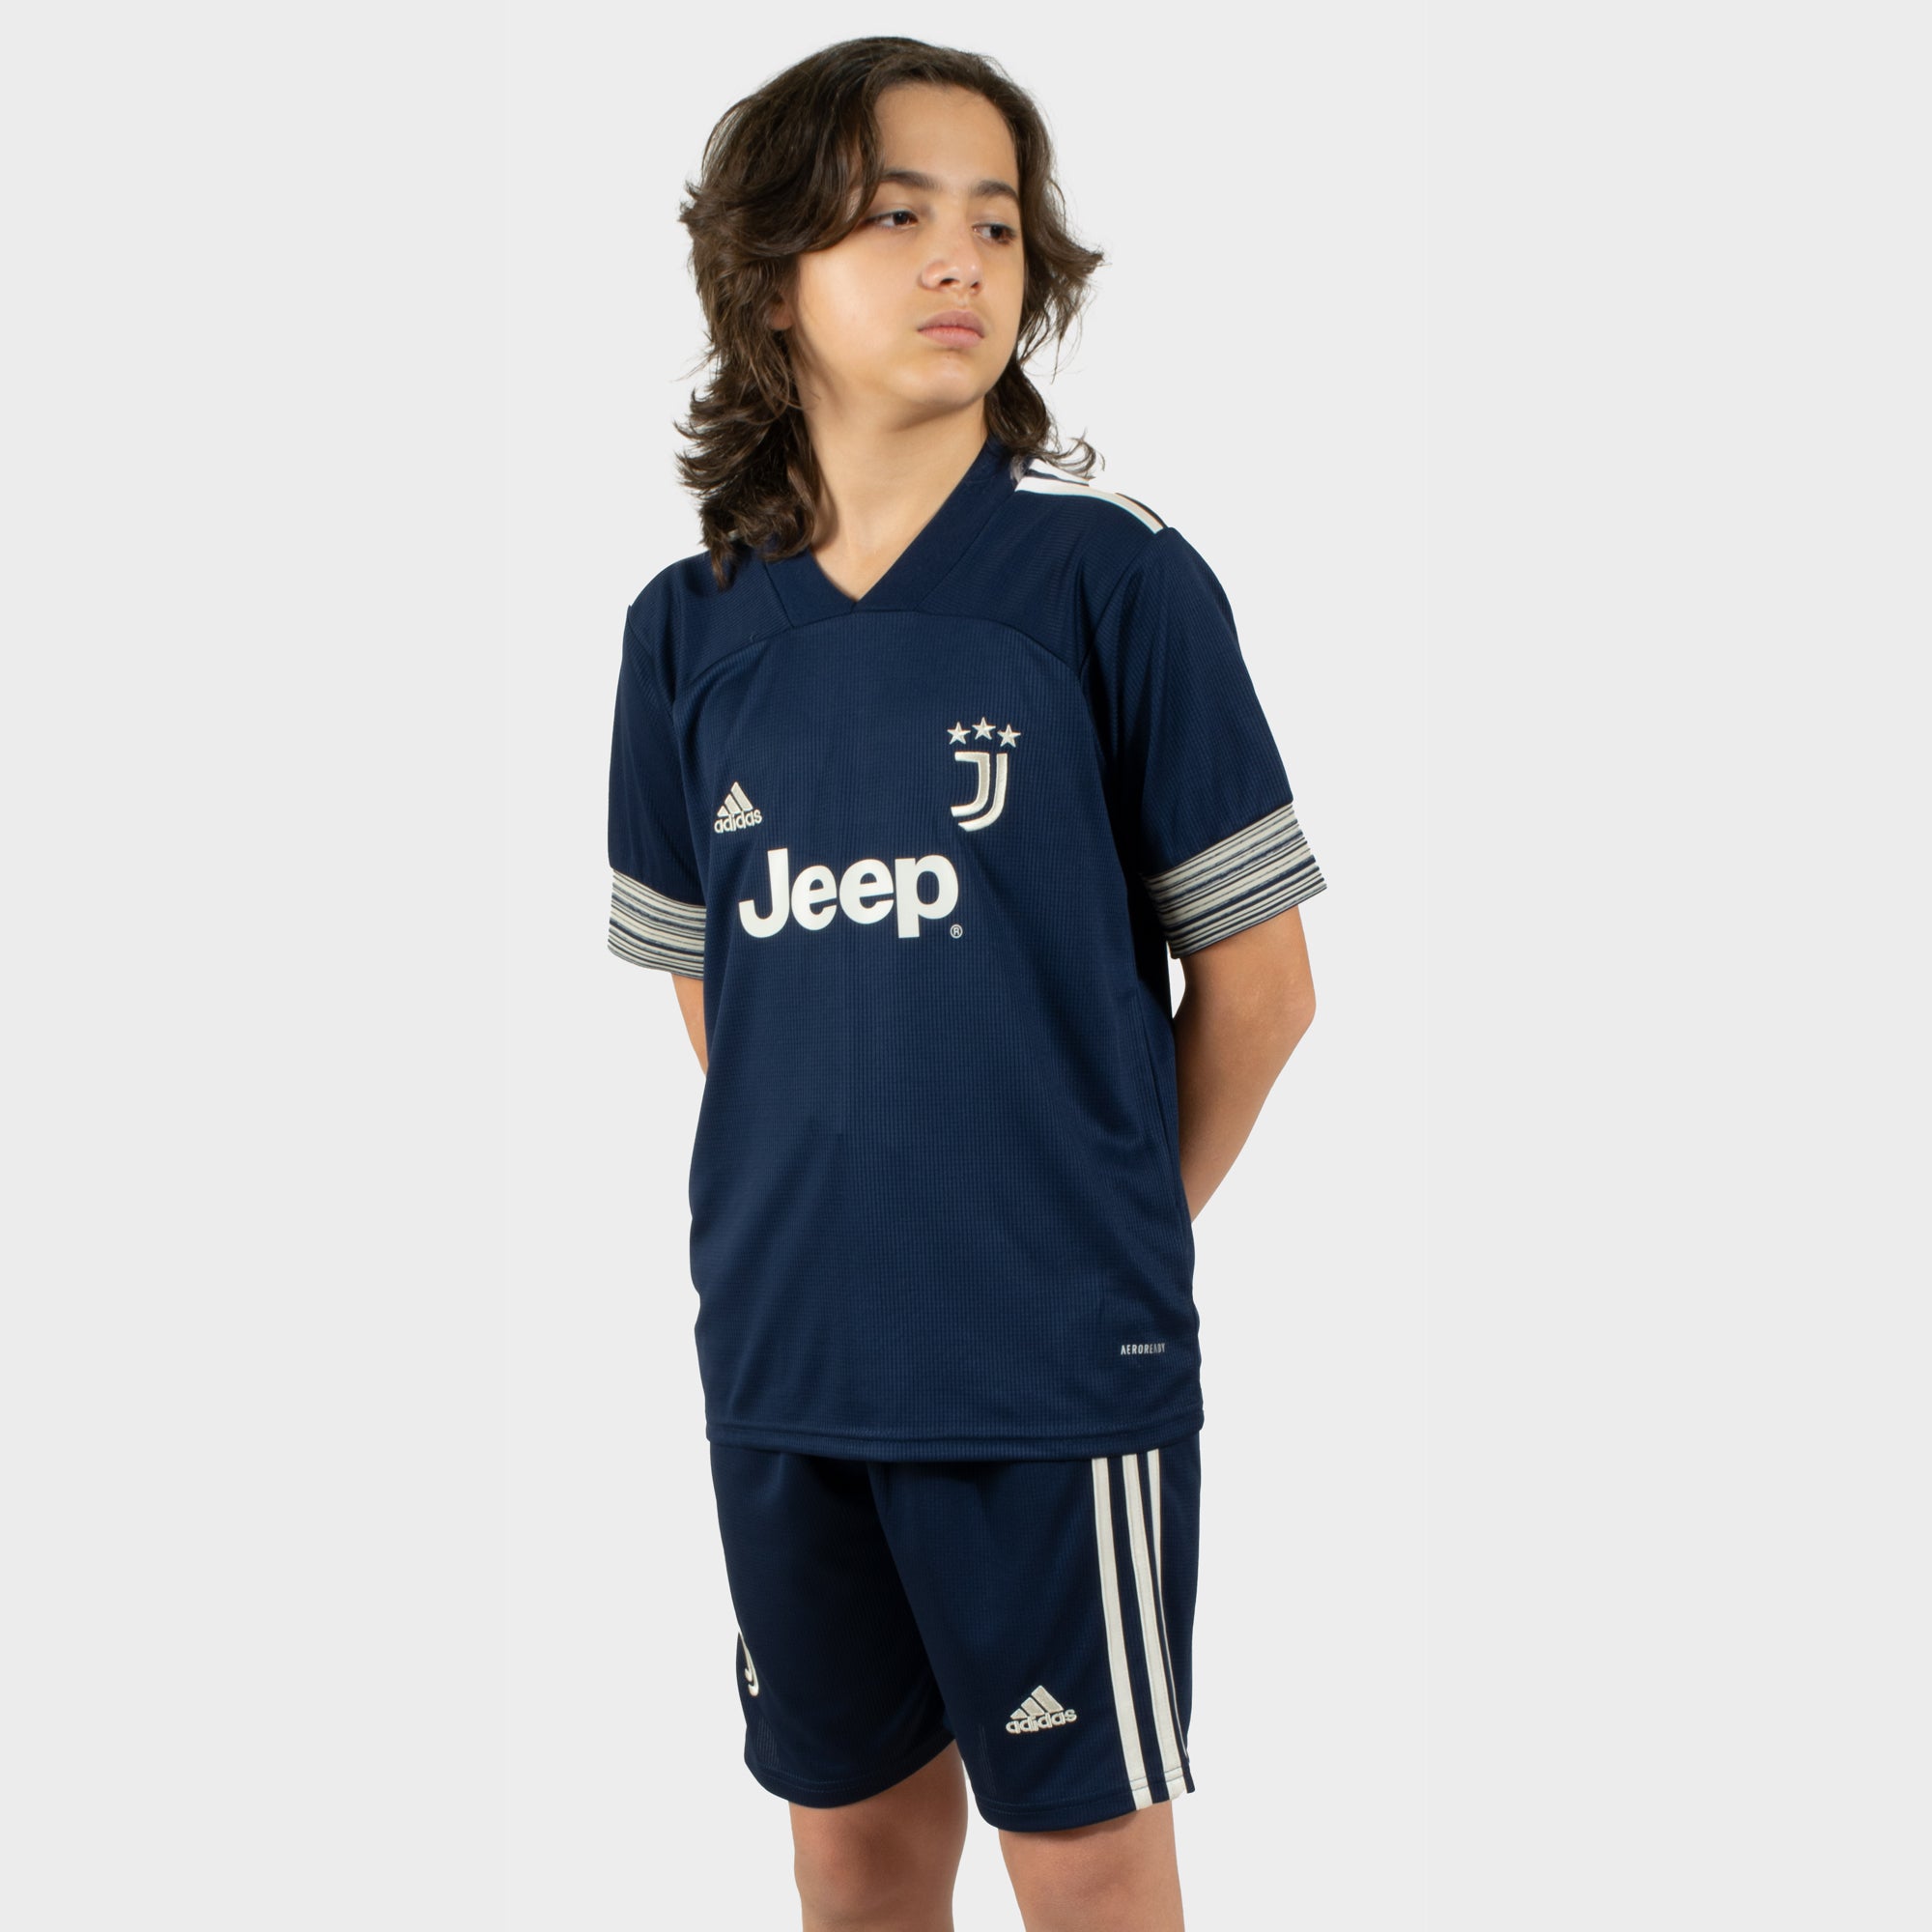 Juventus 2020 2021 Kids Away Kit Mitani Store